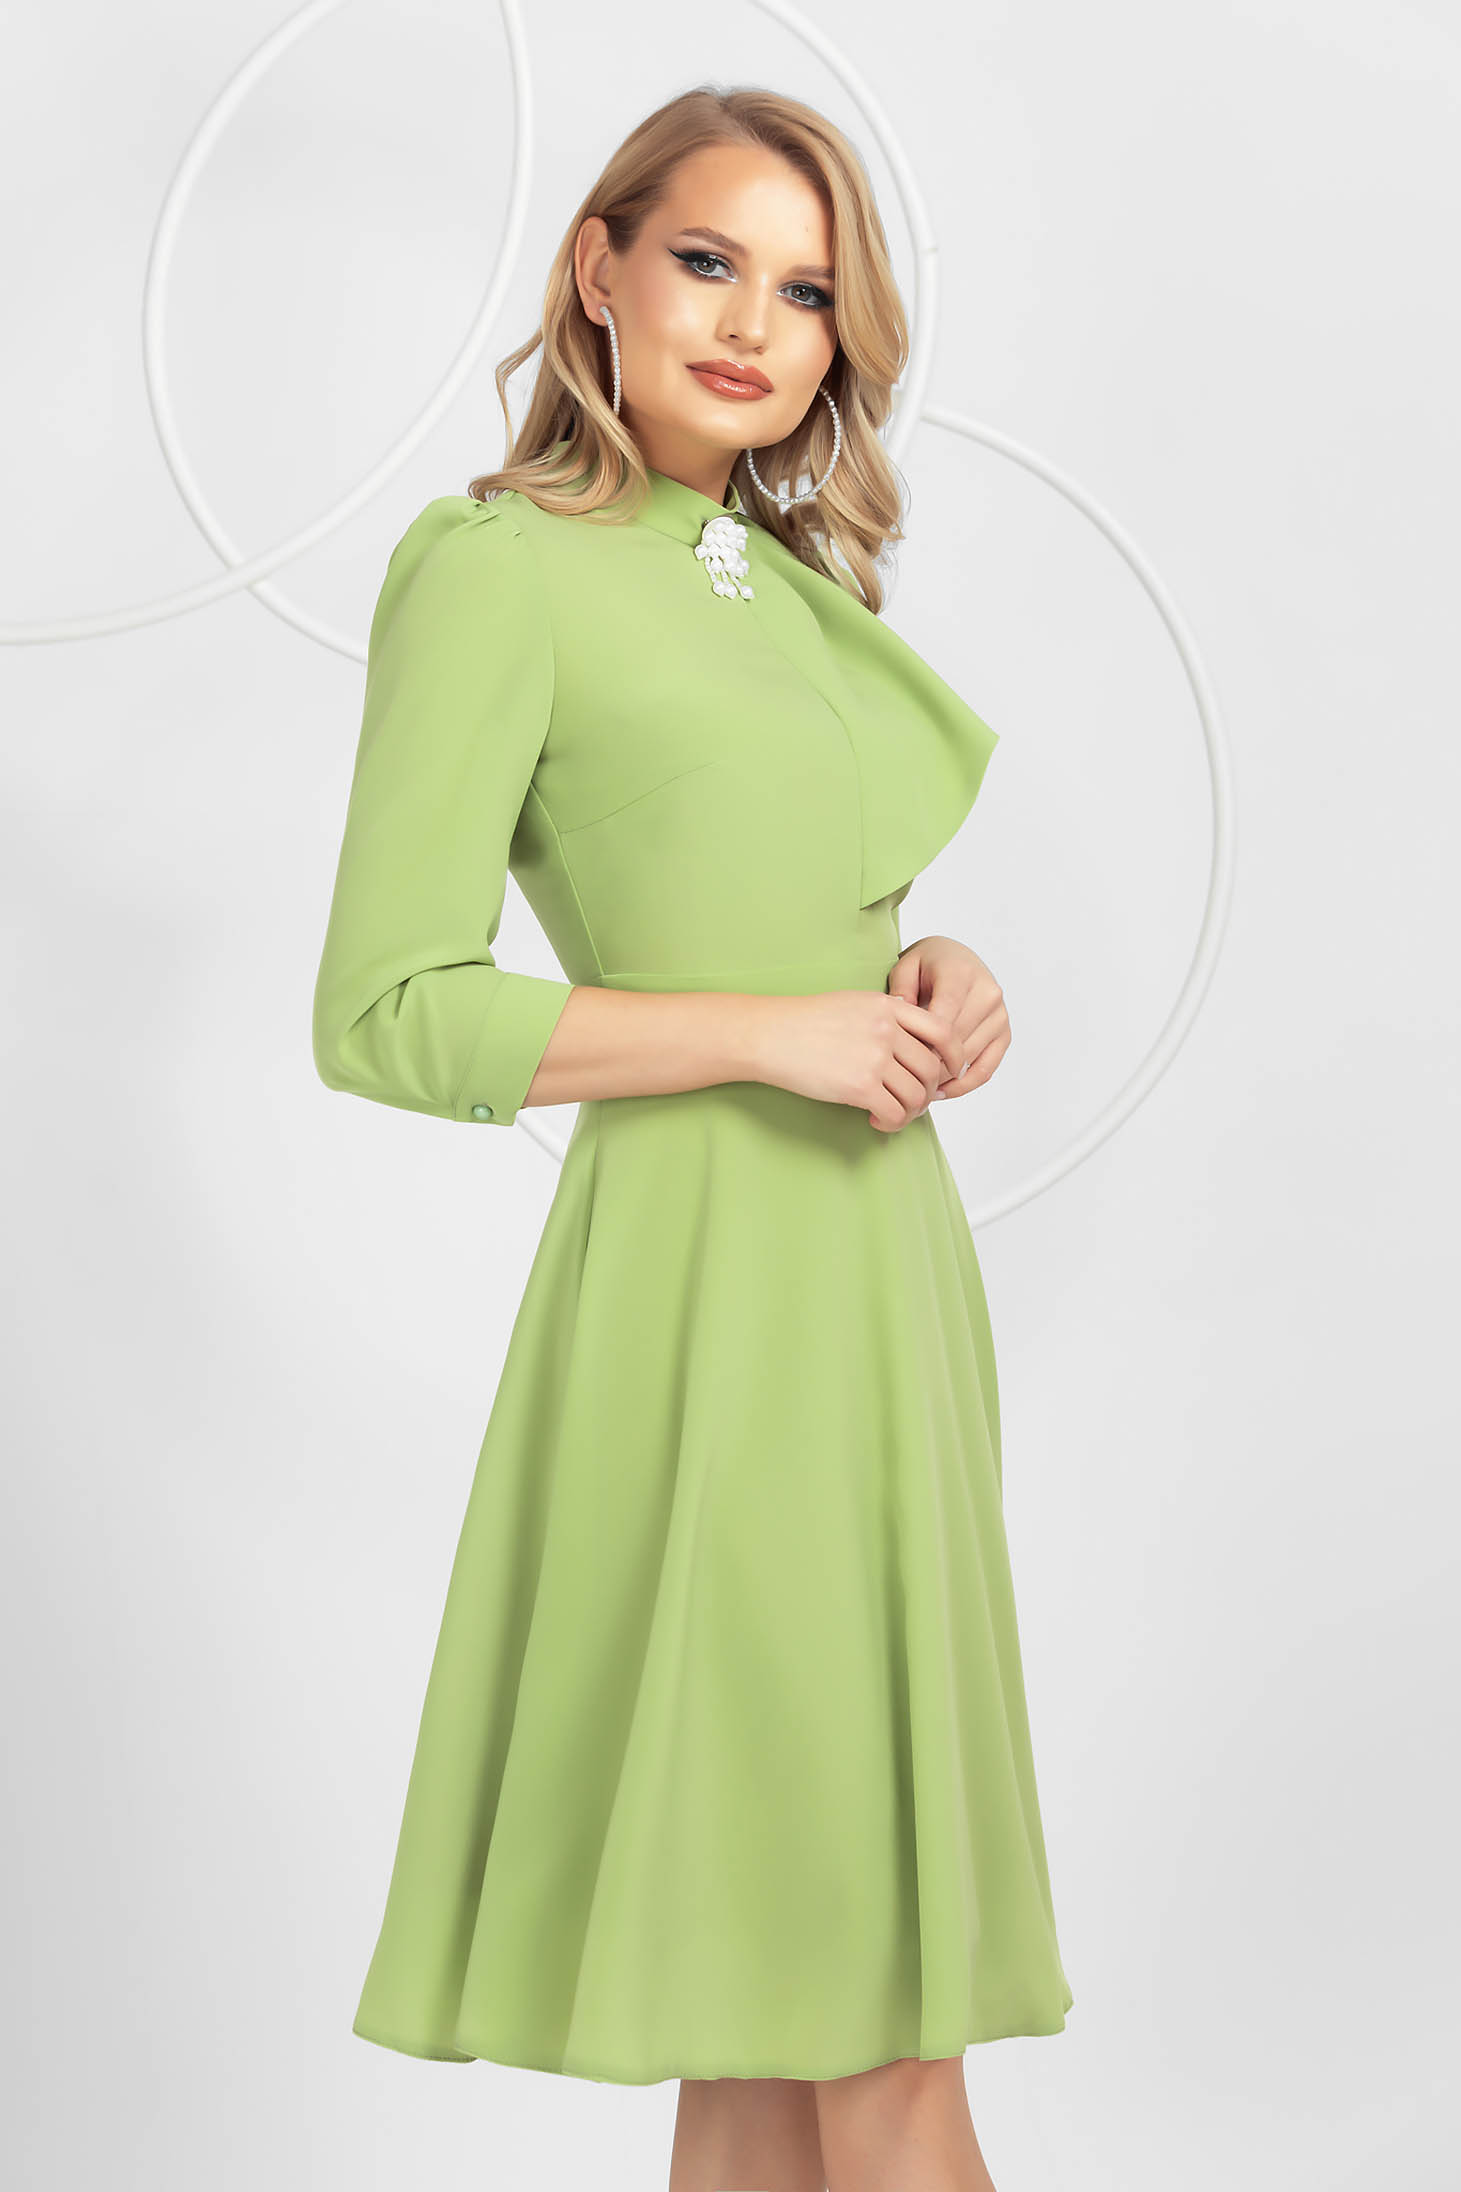 Világos zöld harang ruha muszlinból bross kiegészítővel 2 - StarShinerS.hu